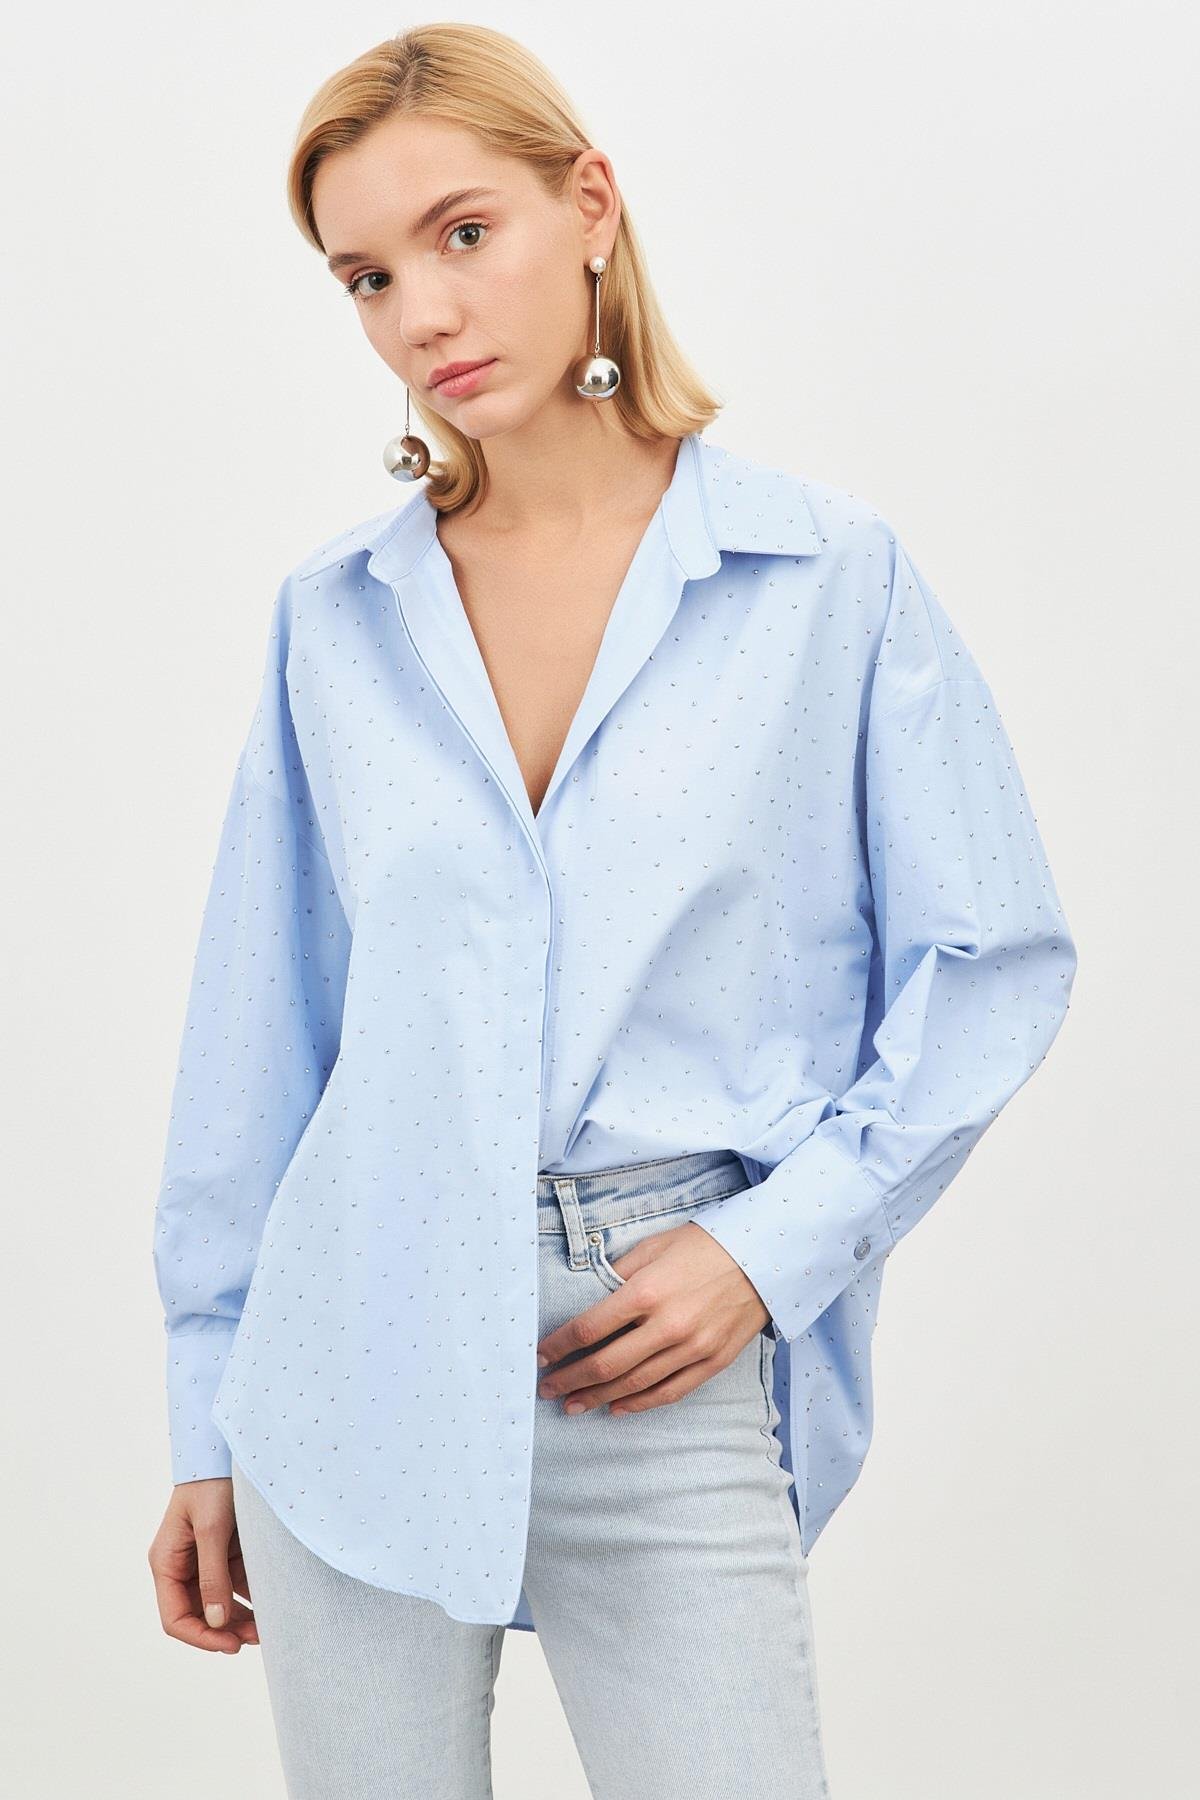 Kadın Bebe Mavi Gömlek Yaka Uzun Kollu Taş Yapıştırma Detaylı Düğme  Kapamalı Gömlek ST090W55372001 | Setre